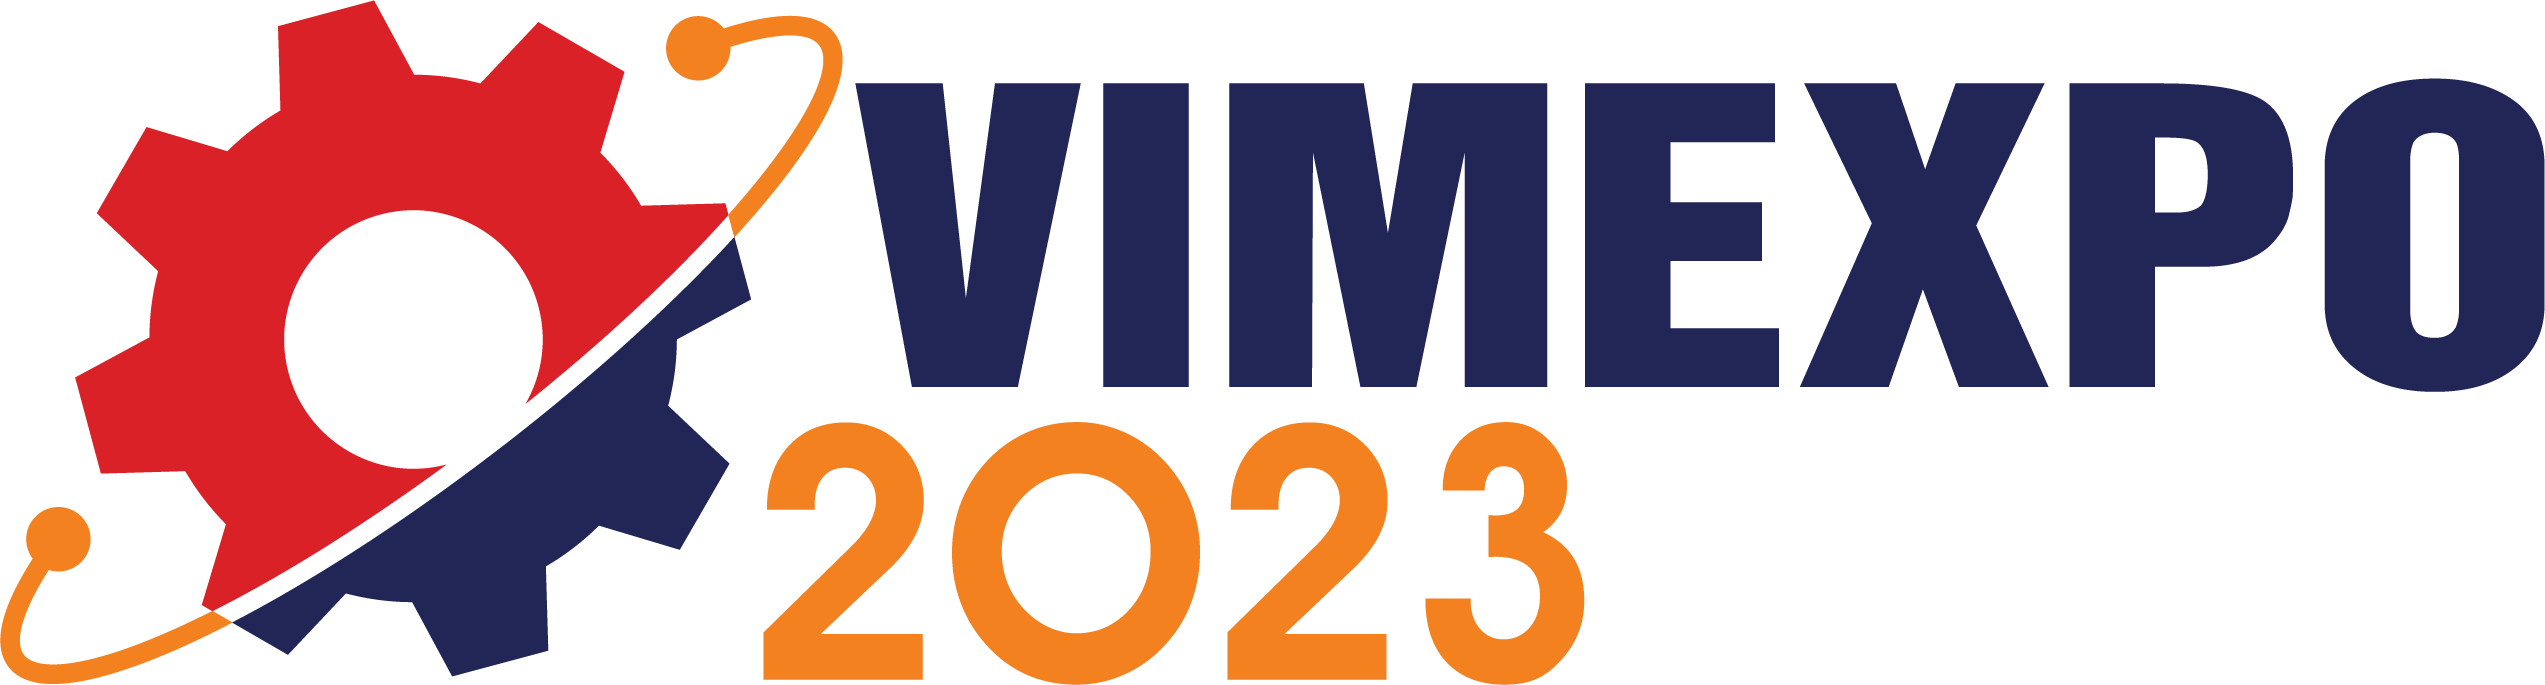 VIMEXPO 2023 - Triển lãm trực tuyến